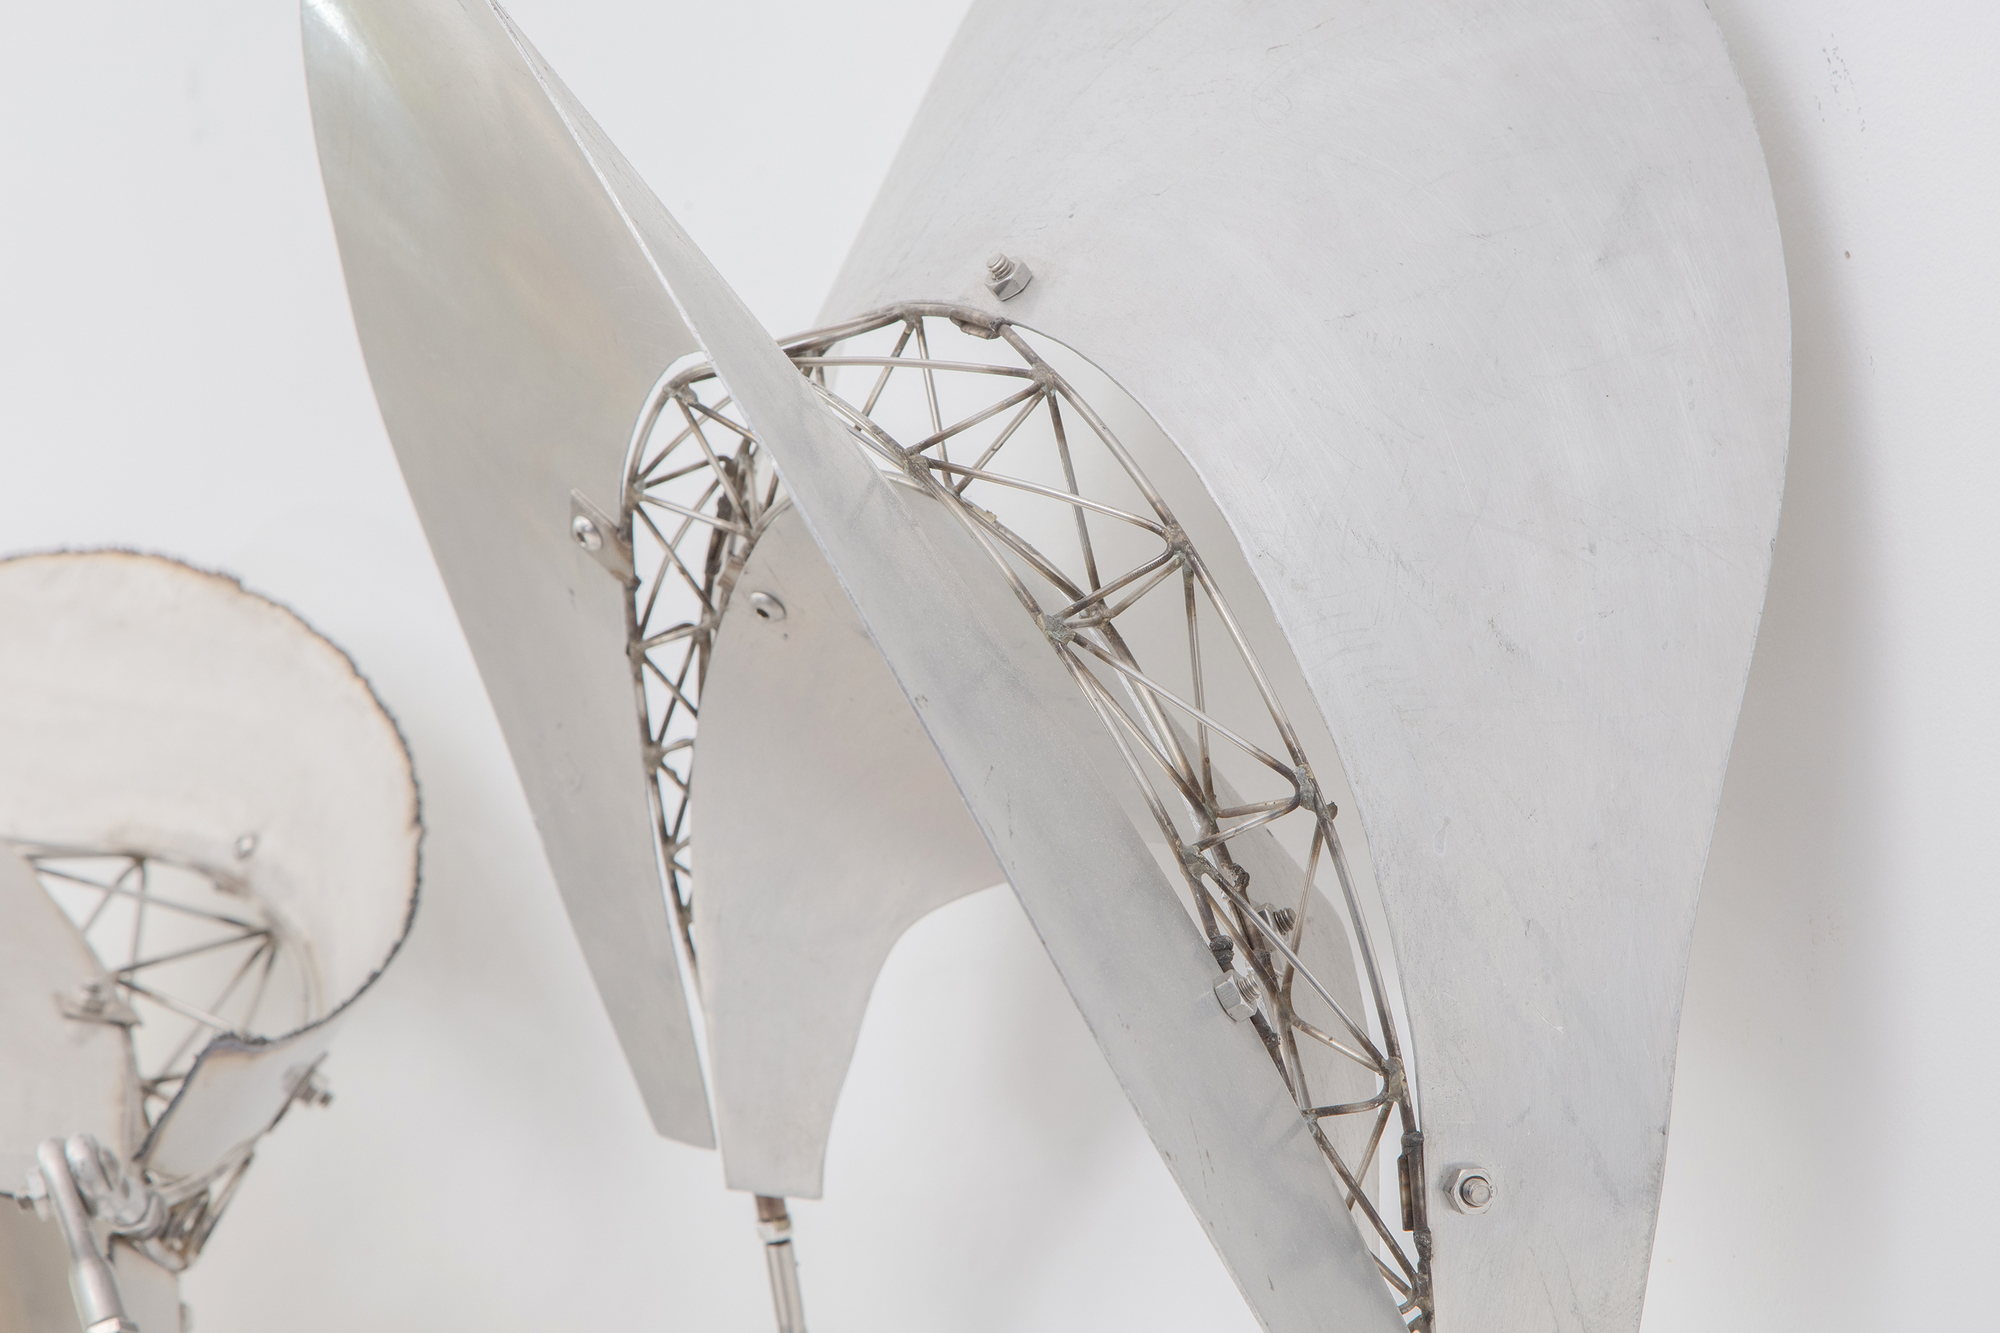 La serie de esculturas Bali de Frank Stella se caracteriza por sus formas flotantes y fluidas, que se extienden por el espacio del espectador e invitan a la interacción entre el objeto y su entorno. El &quot;dadap&quot;, un tipo de árbol asociado al crecimiento y al significado ritual en la cultura balinesa, refleja la naturaleza orgánica y dinámica de las esculturas de Stella. Al cambiar el bambú por el acero inoxidable y el aluminio, Stella ha preservado la naturaleza esencial de la estética balinesa, que ensalza las formas orgánicas, fluidas y dinámicas. Dadap presenta una continuidad en la exploración temática de Stella en la que el espíritu de su obra trasciende la materialidad. El metal ofrece una textura, una reflectividad y una interacción con la luz y el espacio diferentes, pero se adhiere a los principios del movimiento y la interactividad. Se trata de una transferencia creativa de forma y concepto a través de diferentes medios, que conserva el espíritu de la inspiración inicial al tiempo que permite que las propiedades del nuevo material expresen estas ideas en un contexto nuevo.